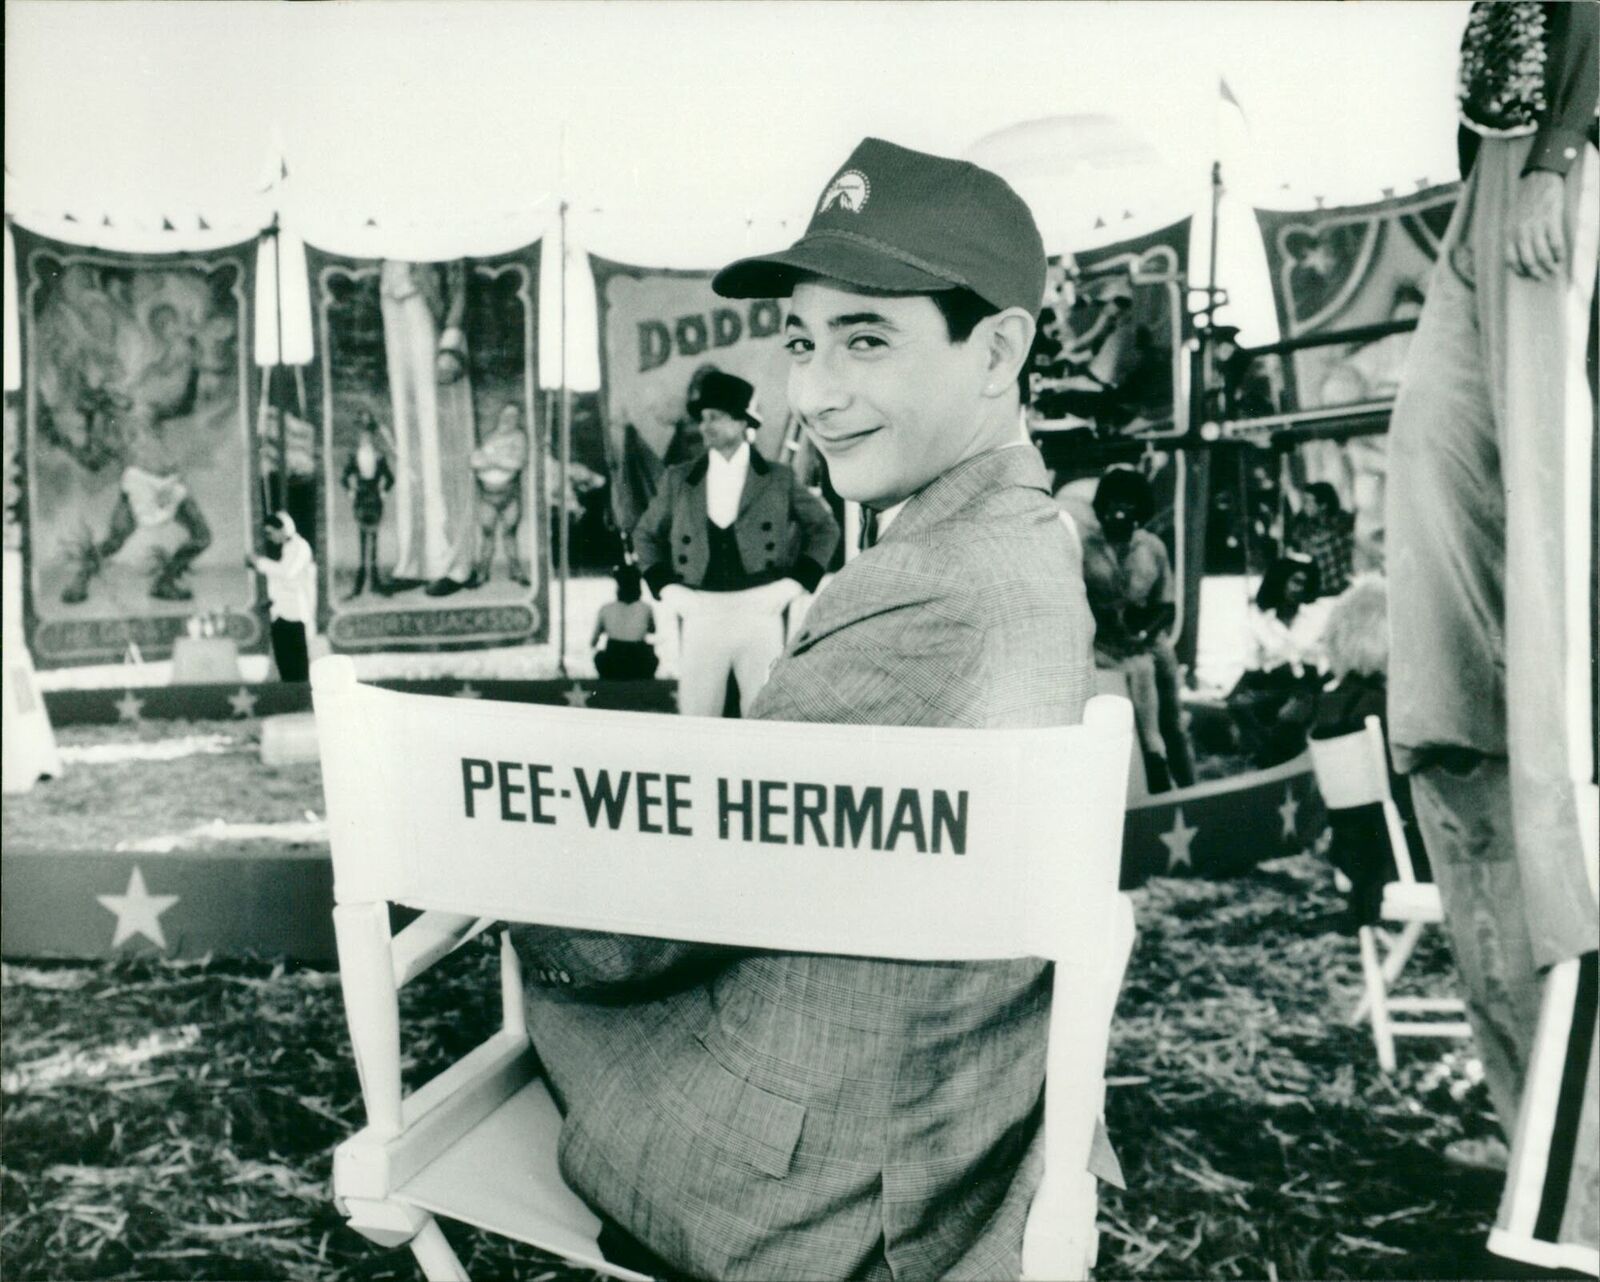 HERHAN PEP WEE GRATWAS - TOP BIG PEE L., PAUL,... - Vintage Photograph 3907126